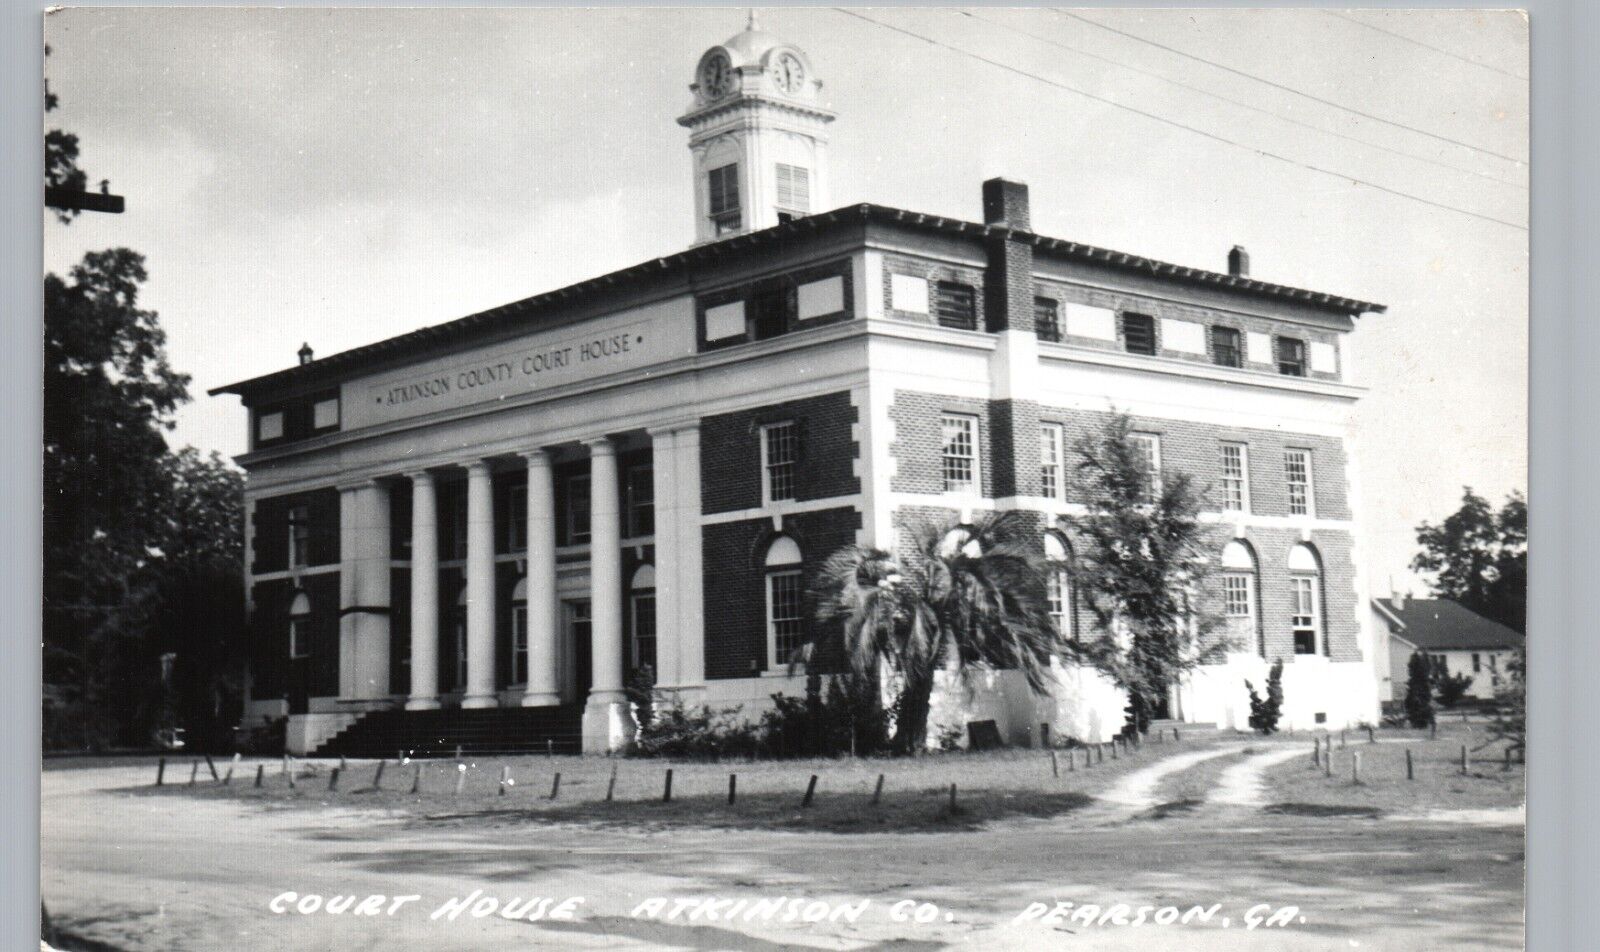 ATKINSON CO. COURT HOUSE pearson ga real photo postcard rppc georgia courthouse